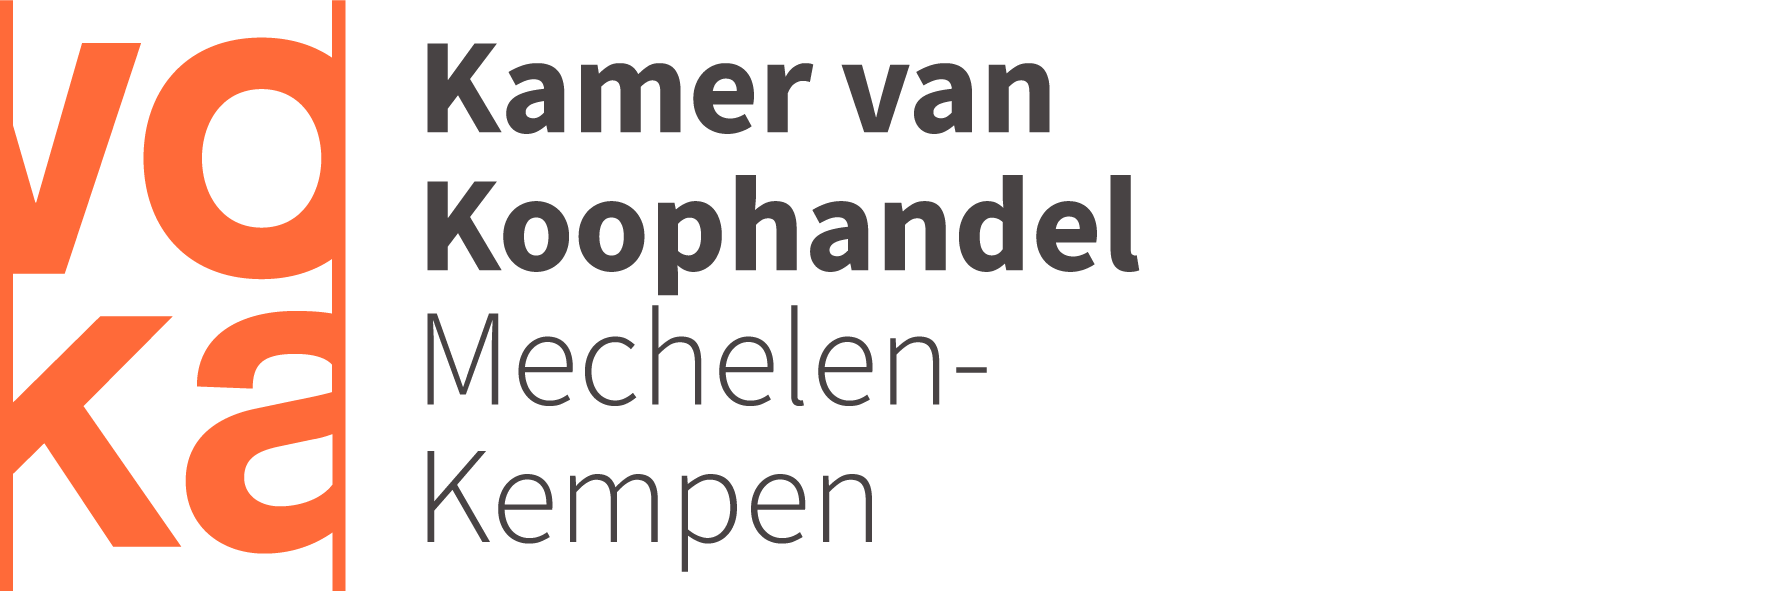 Voka logo Kamer van Koophandel Mechelen Kempen